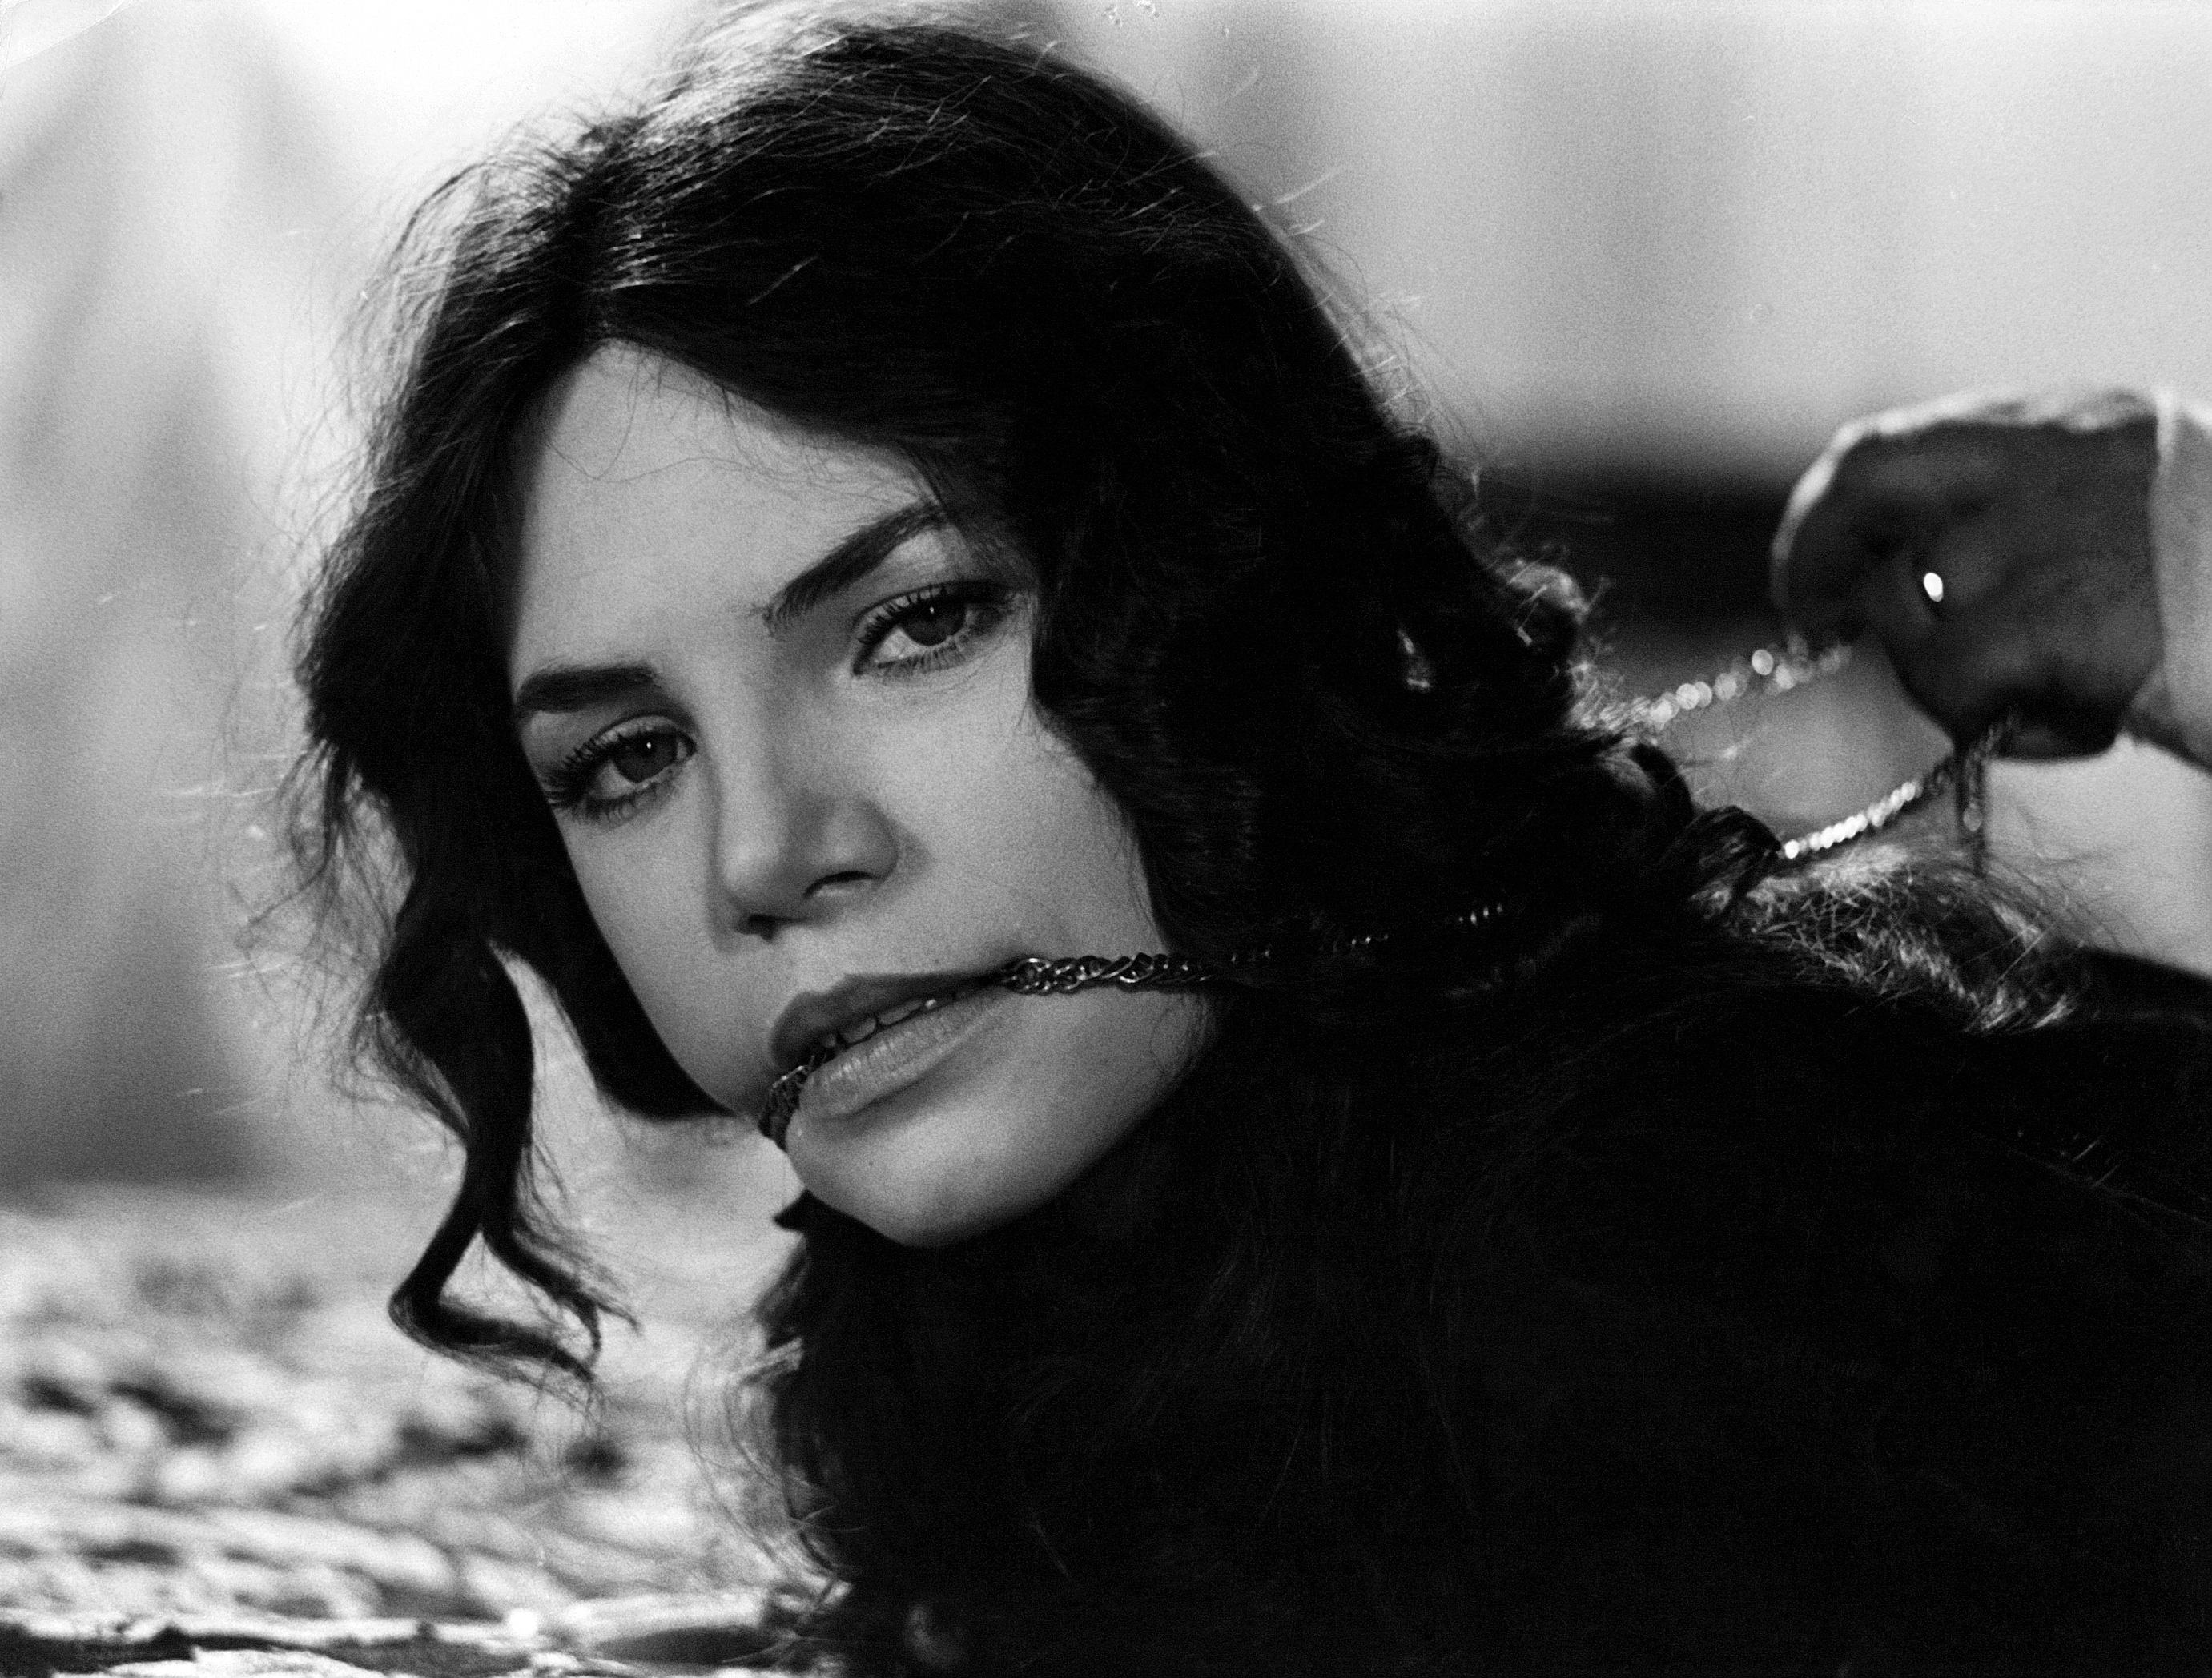 Barbara Magnolfi as Letizia Von Ausberg in Difficile Morire a film by Umberto Silva 1978